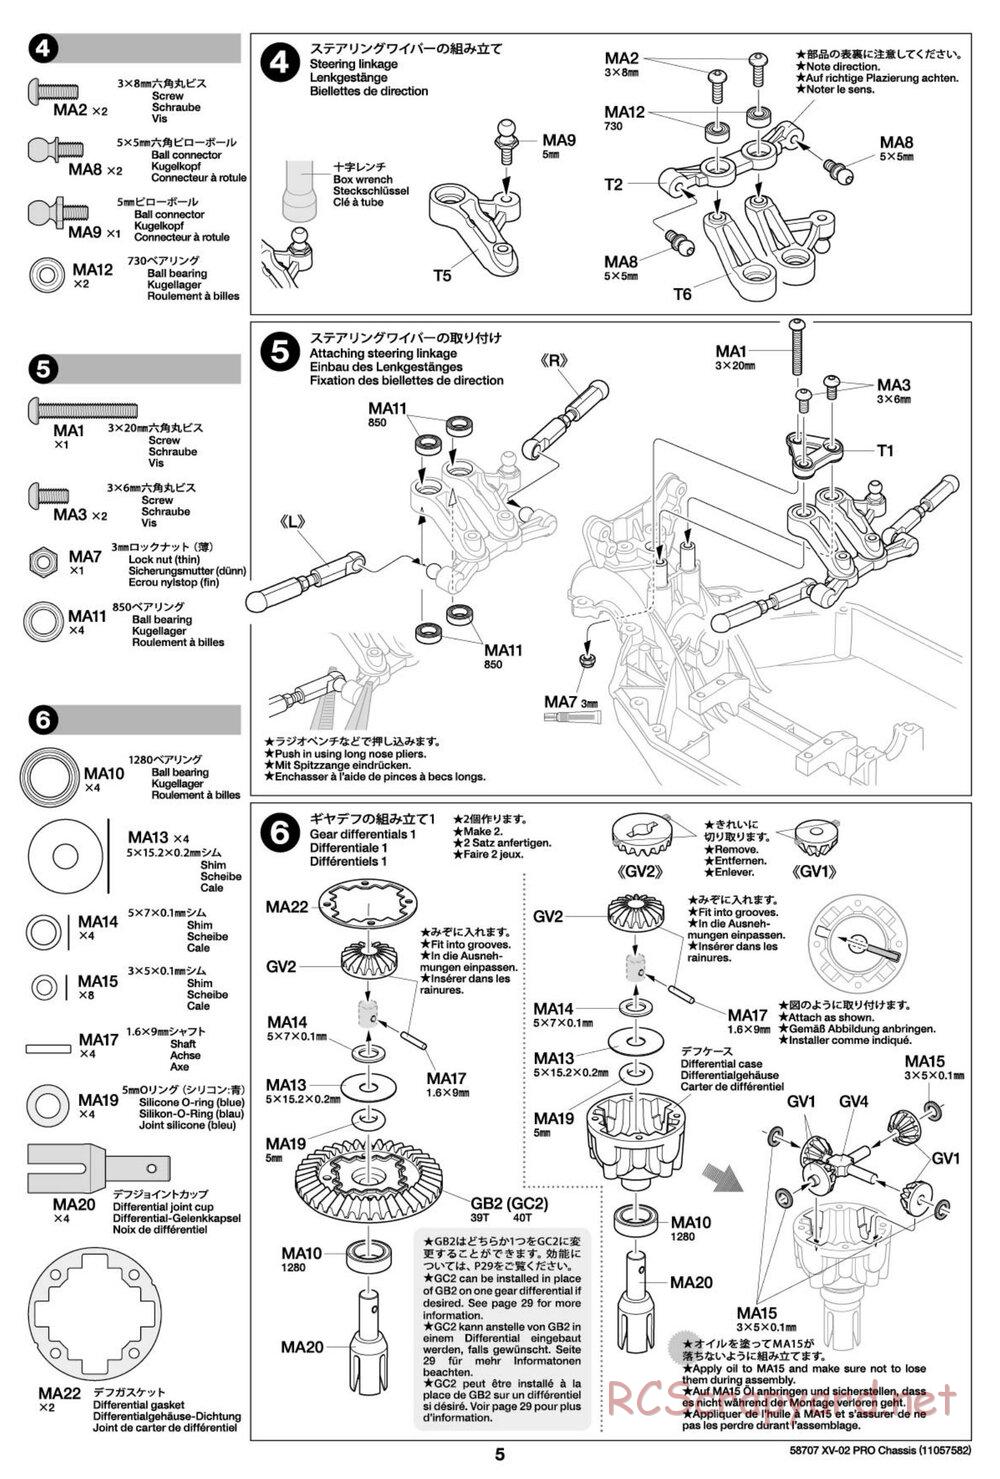 Tamiya - XV-02 Pro Chassis - Manual - Page 5